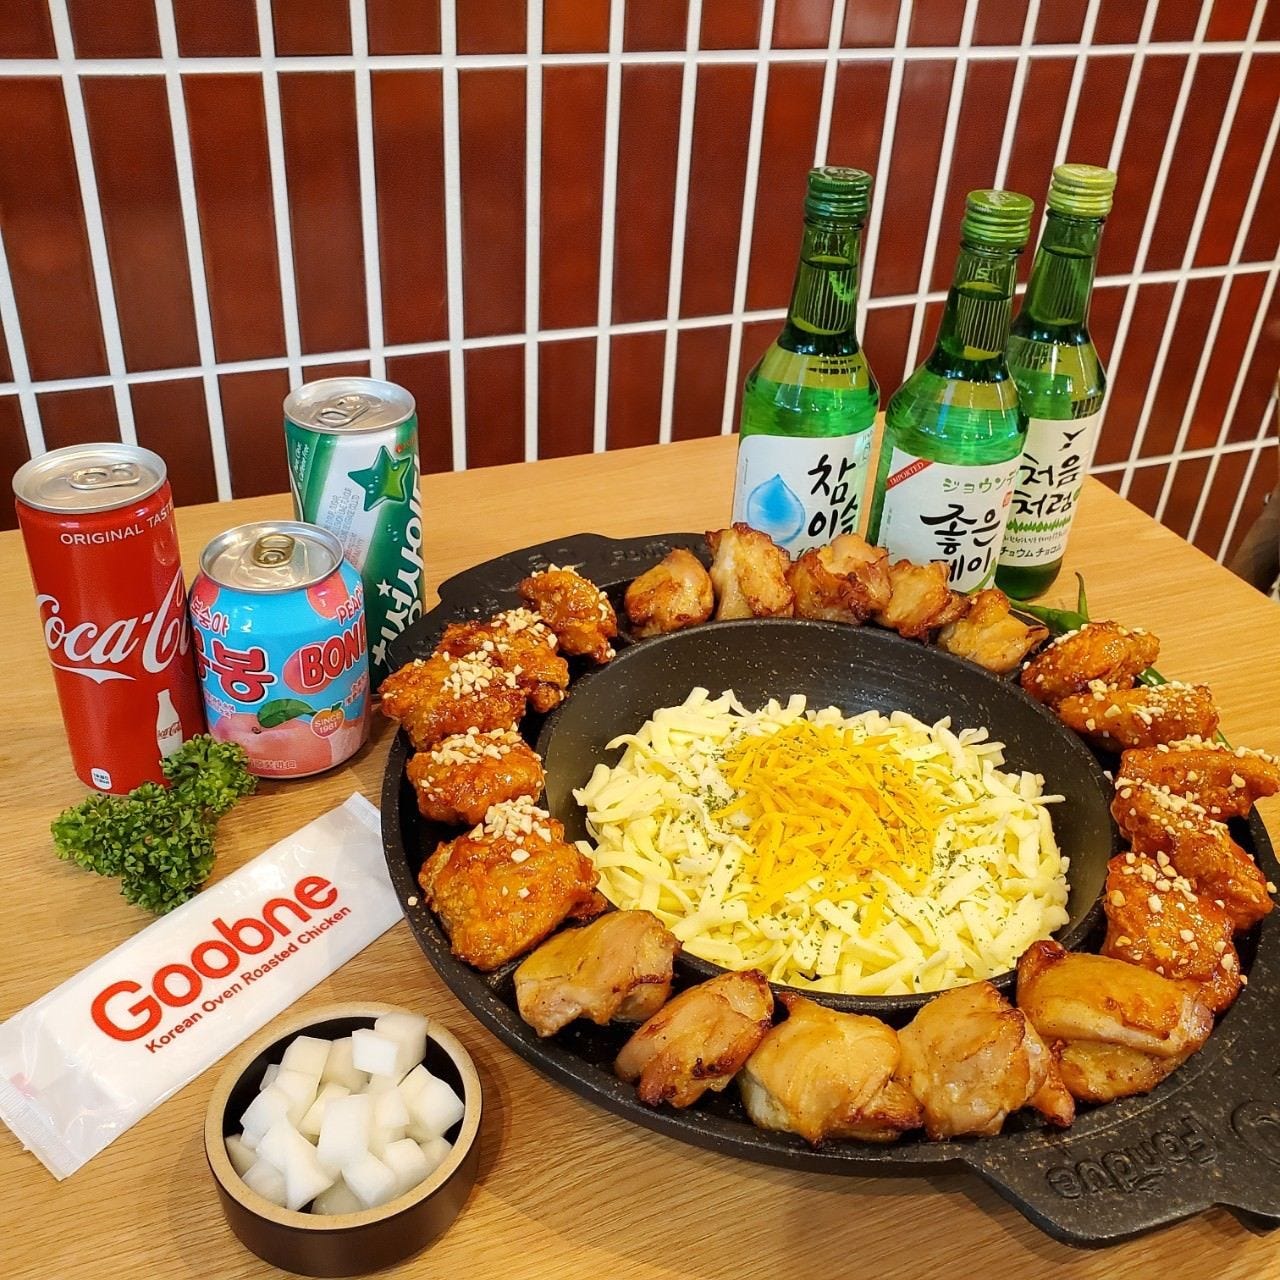 Goobne Chicken 大阪鶴橋店 (グッネチキン)のURL1